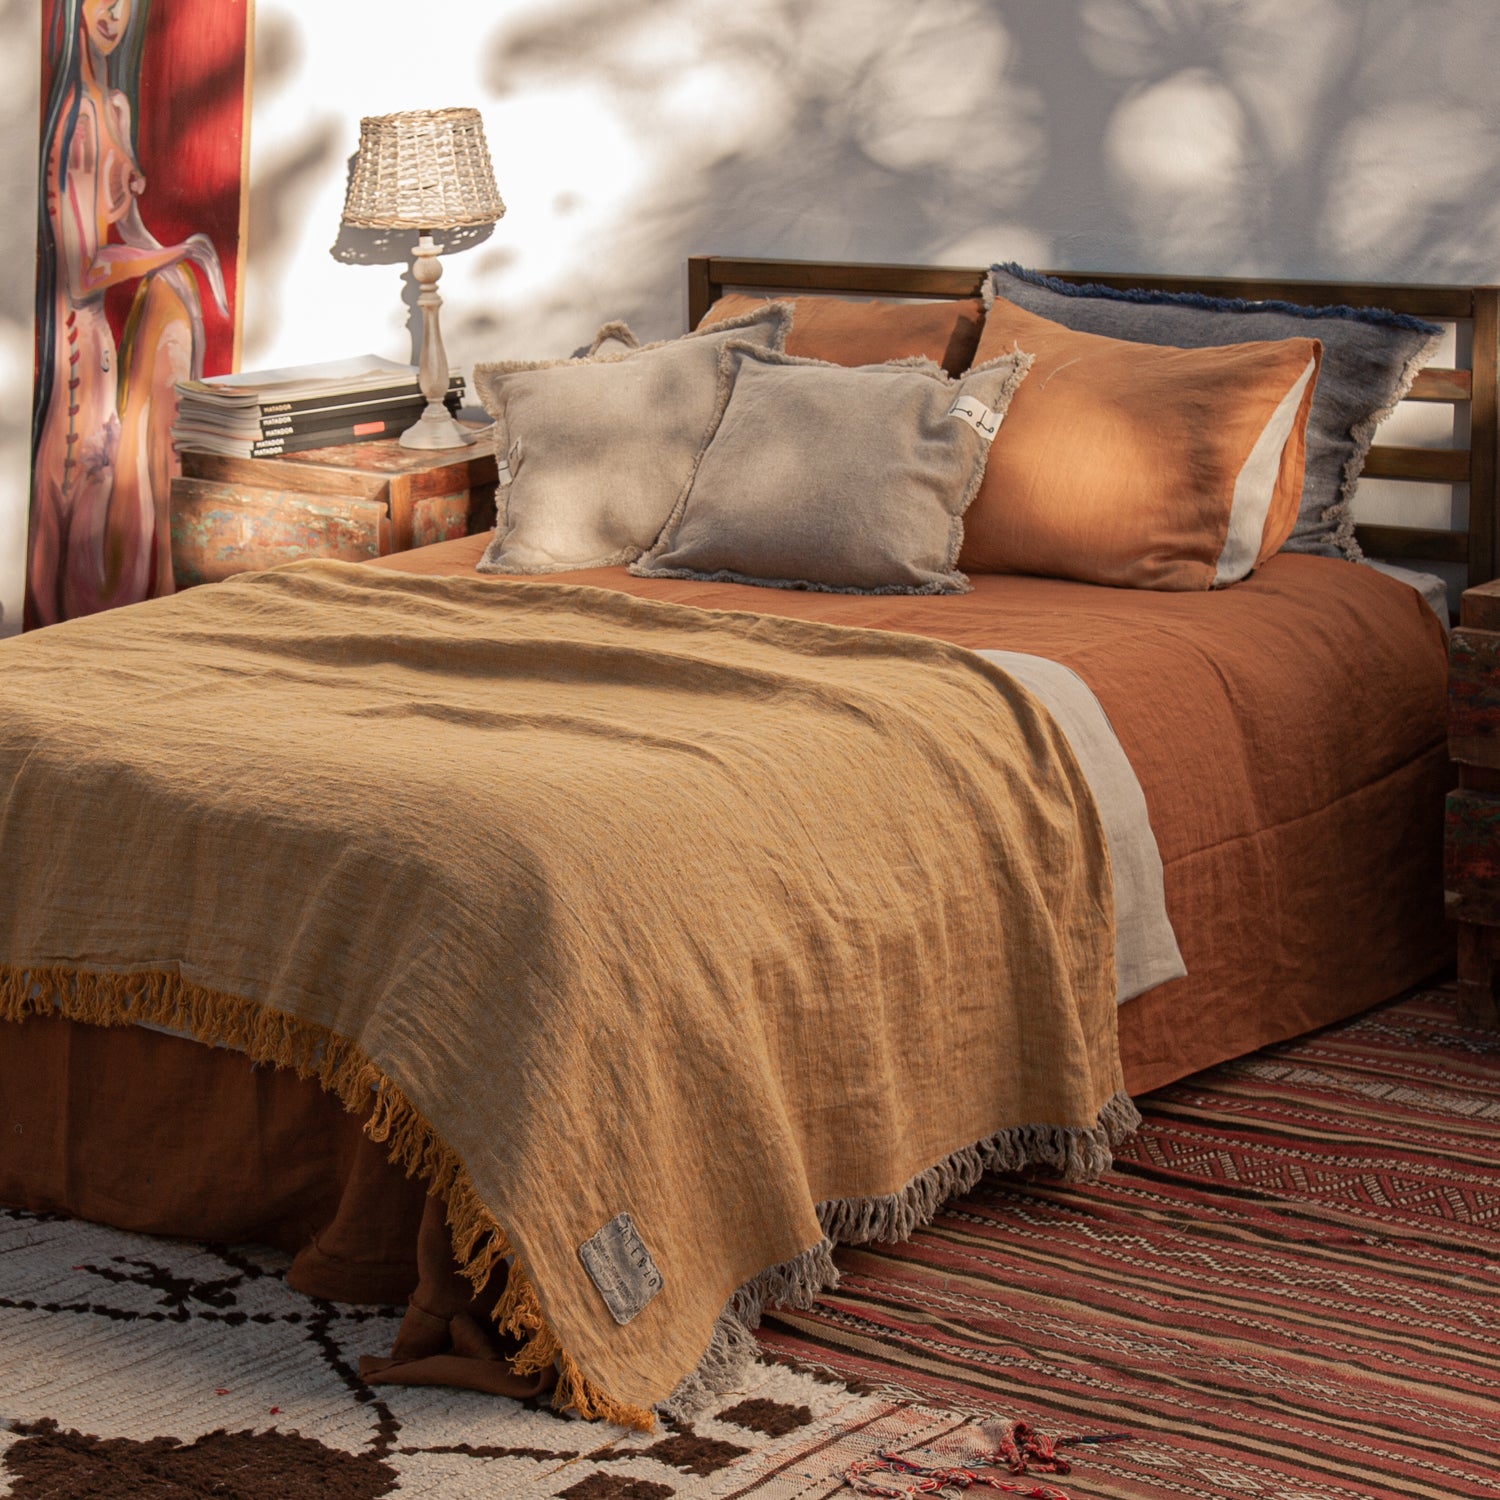 Cama de madera vestida de lino teja. Colcha mostaza y almohadones decorativos de lino rústico natural.